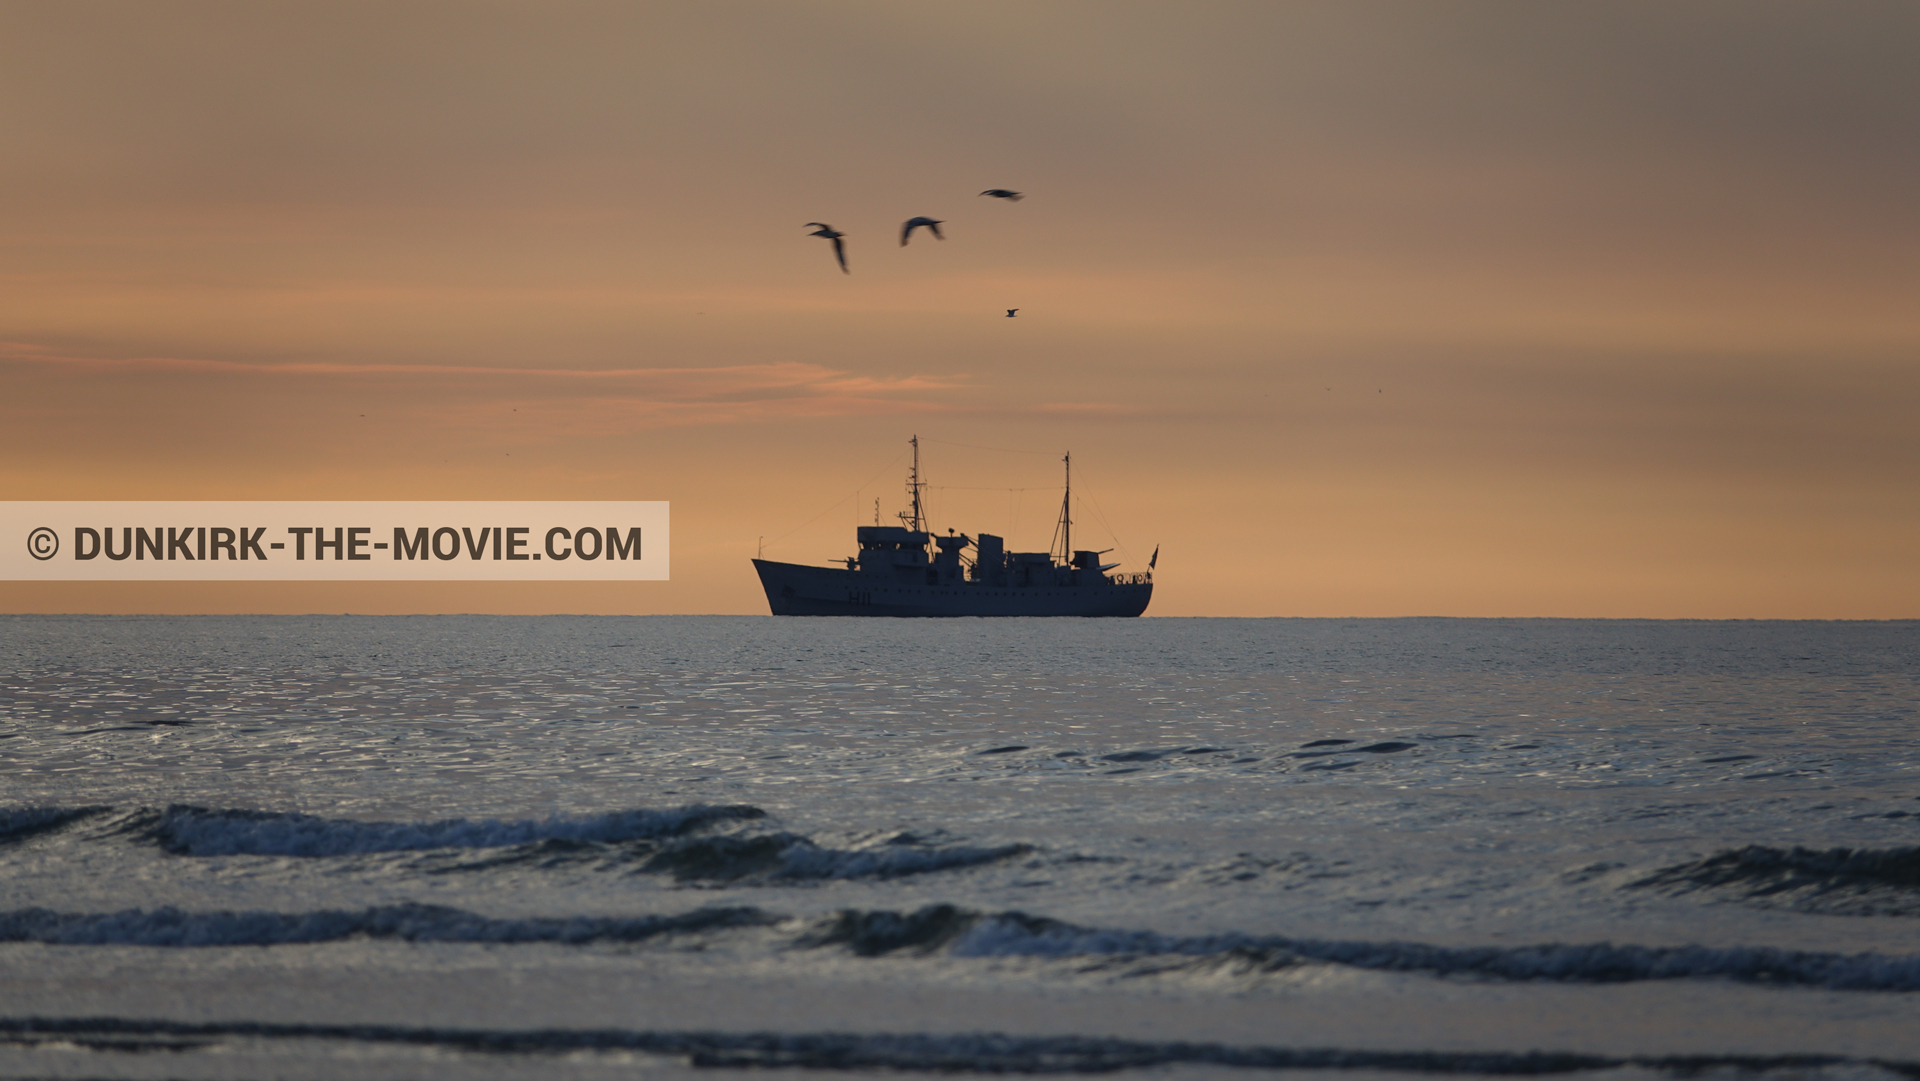 Fotos con barco, cielo anaranjado, mares calma, H11 - MLV Castor,  durante el rodaje de la película Dunkerque de Nolan